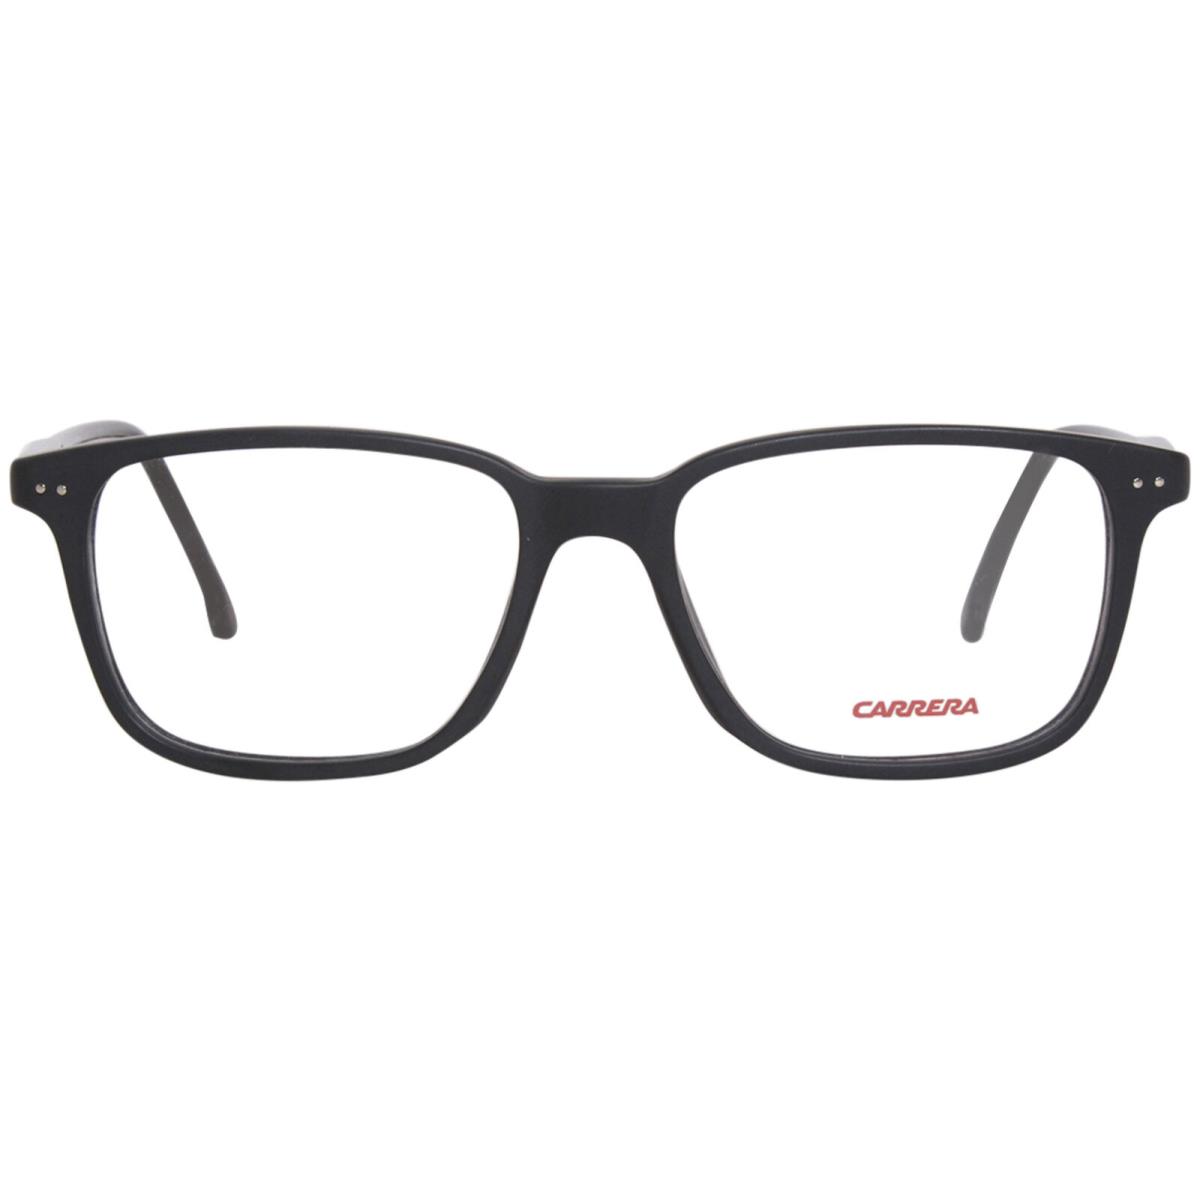 Carrera 213/N 003 Eyeglasses Frame Matte Black Full Rim Rectangle Shape 52mm